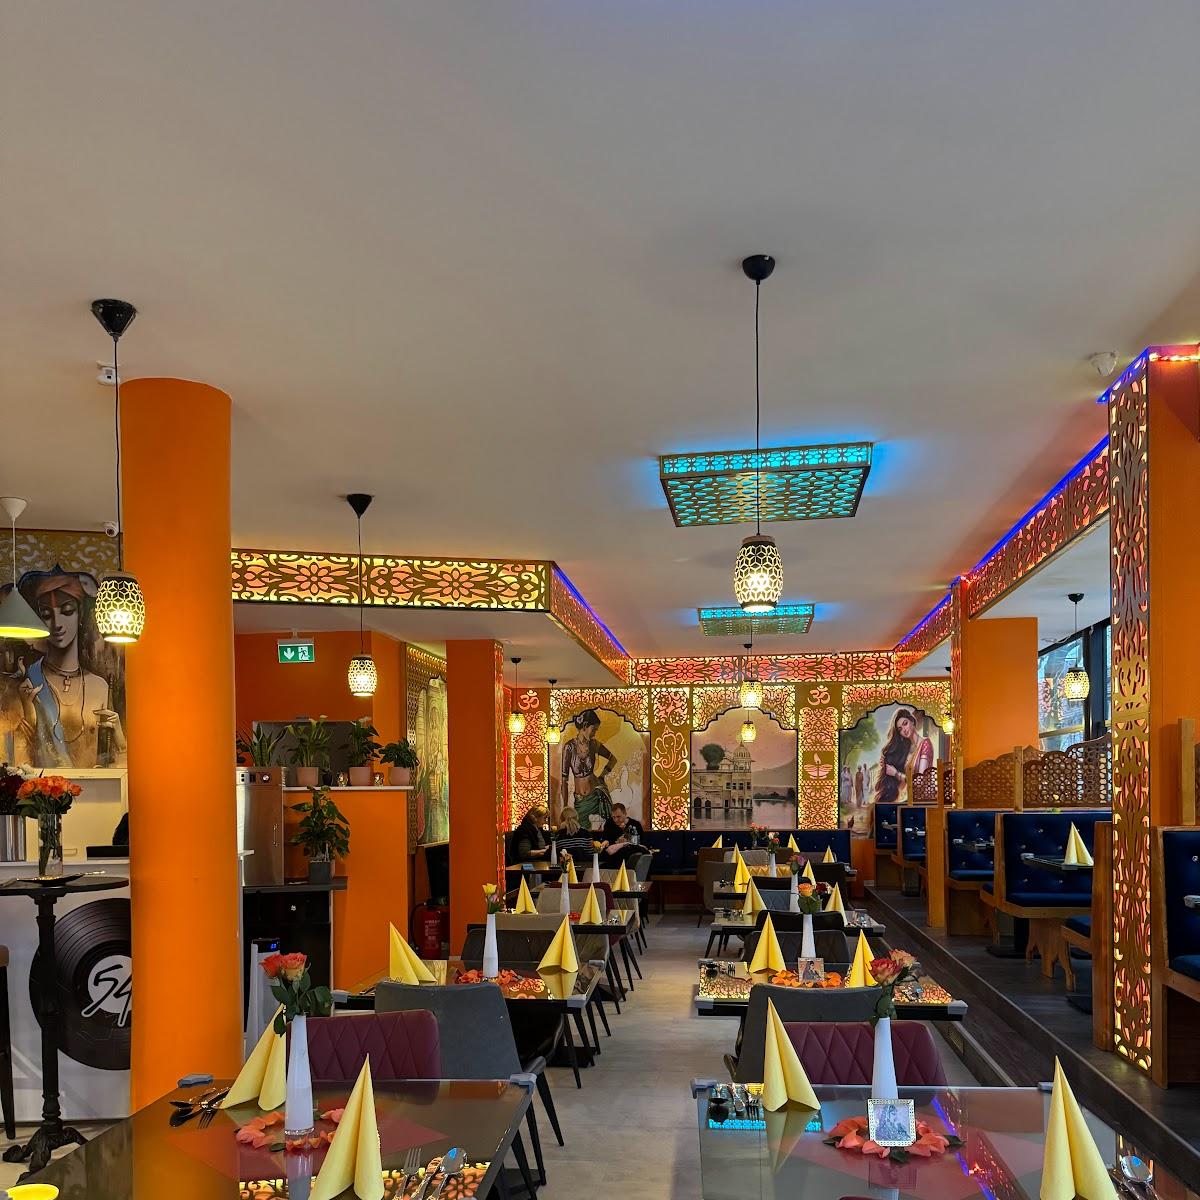 Restaurant "Saffron Indisches Restaurant" in Sindelfingen